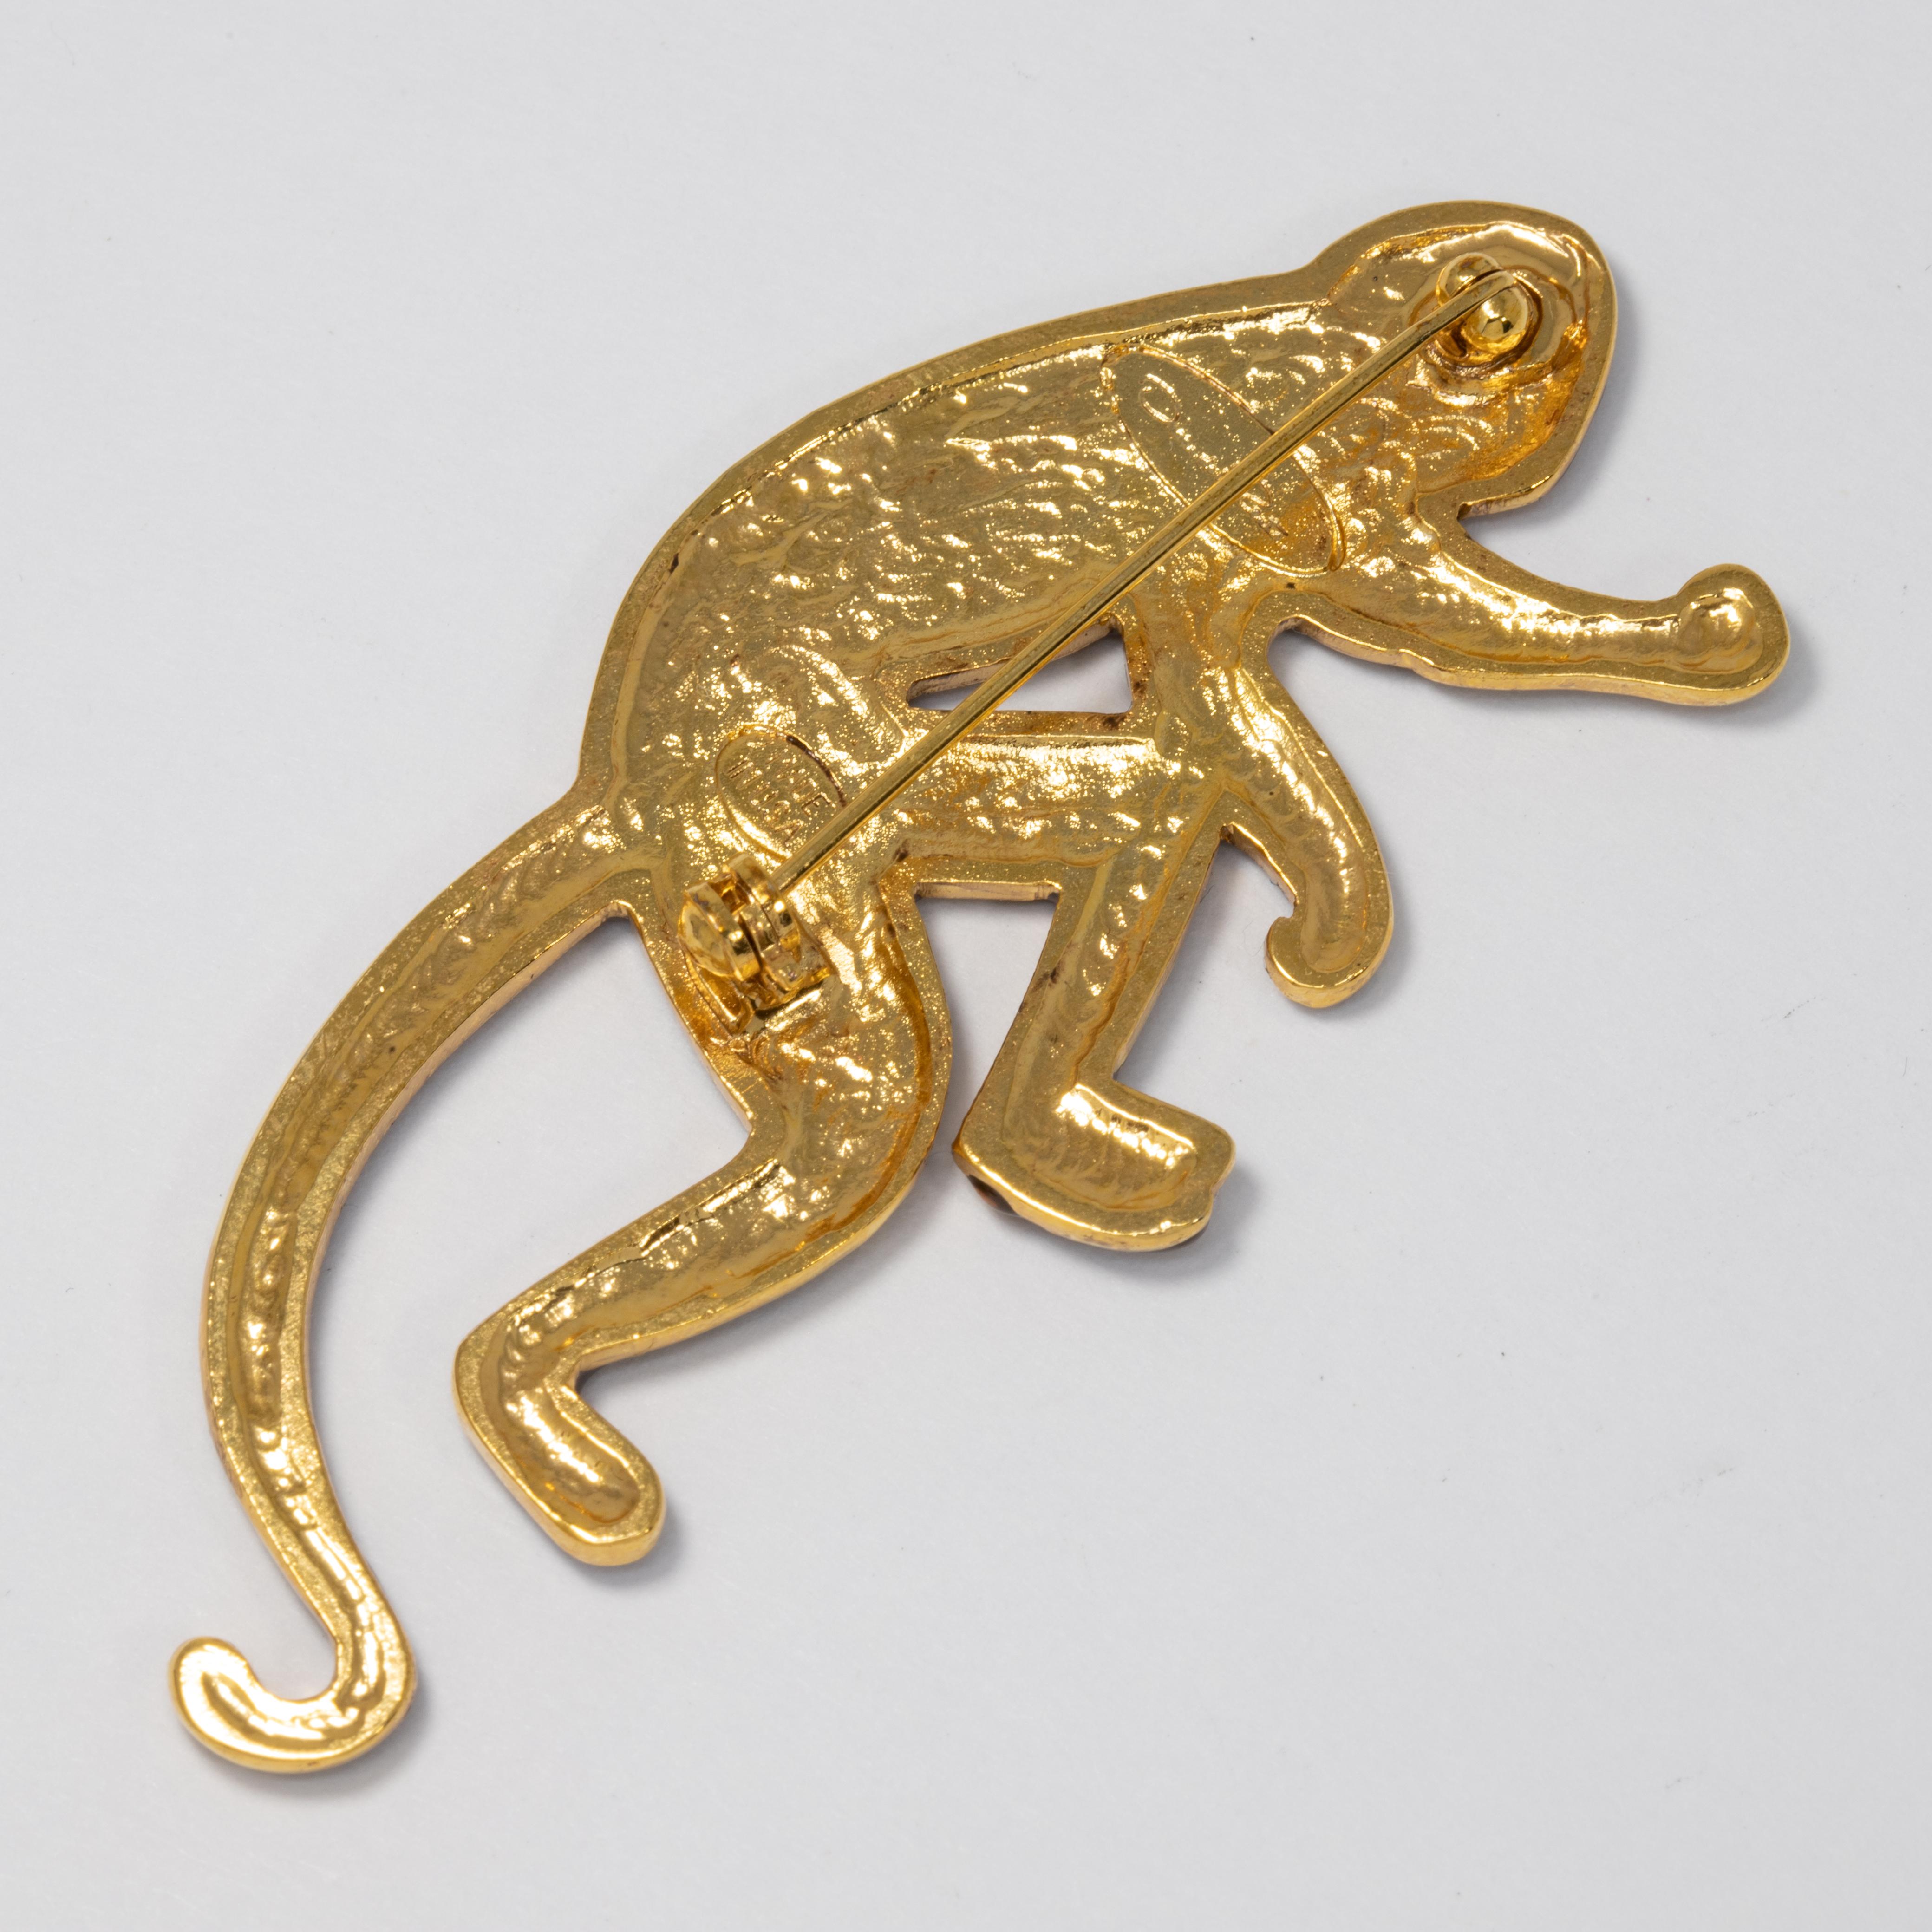 Oscar de la Renta Caramel Enamel Monkey Pin Brooch in Gold In New Condition For Sale In Milford, DE